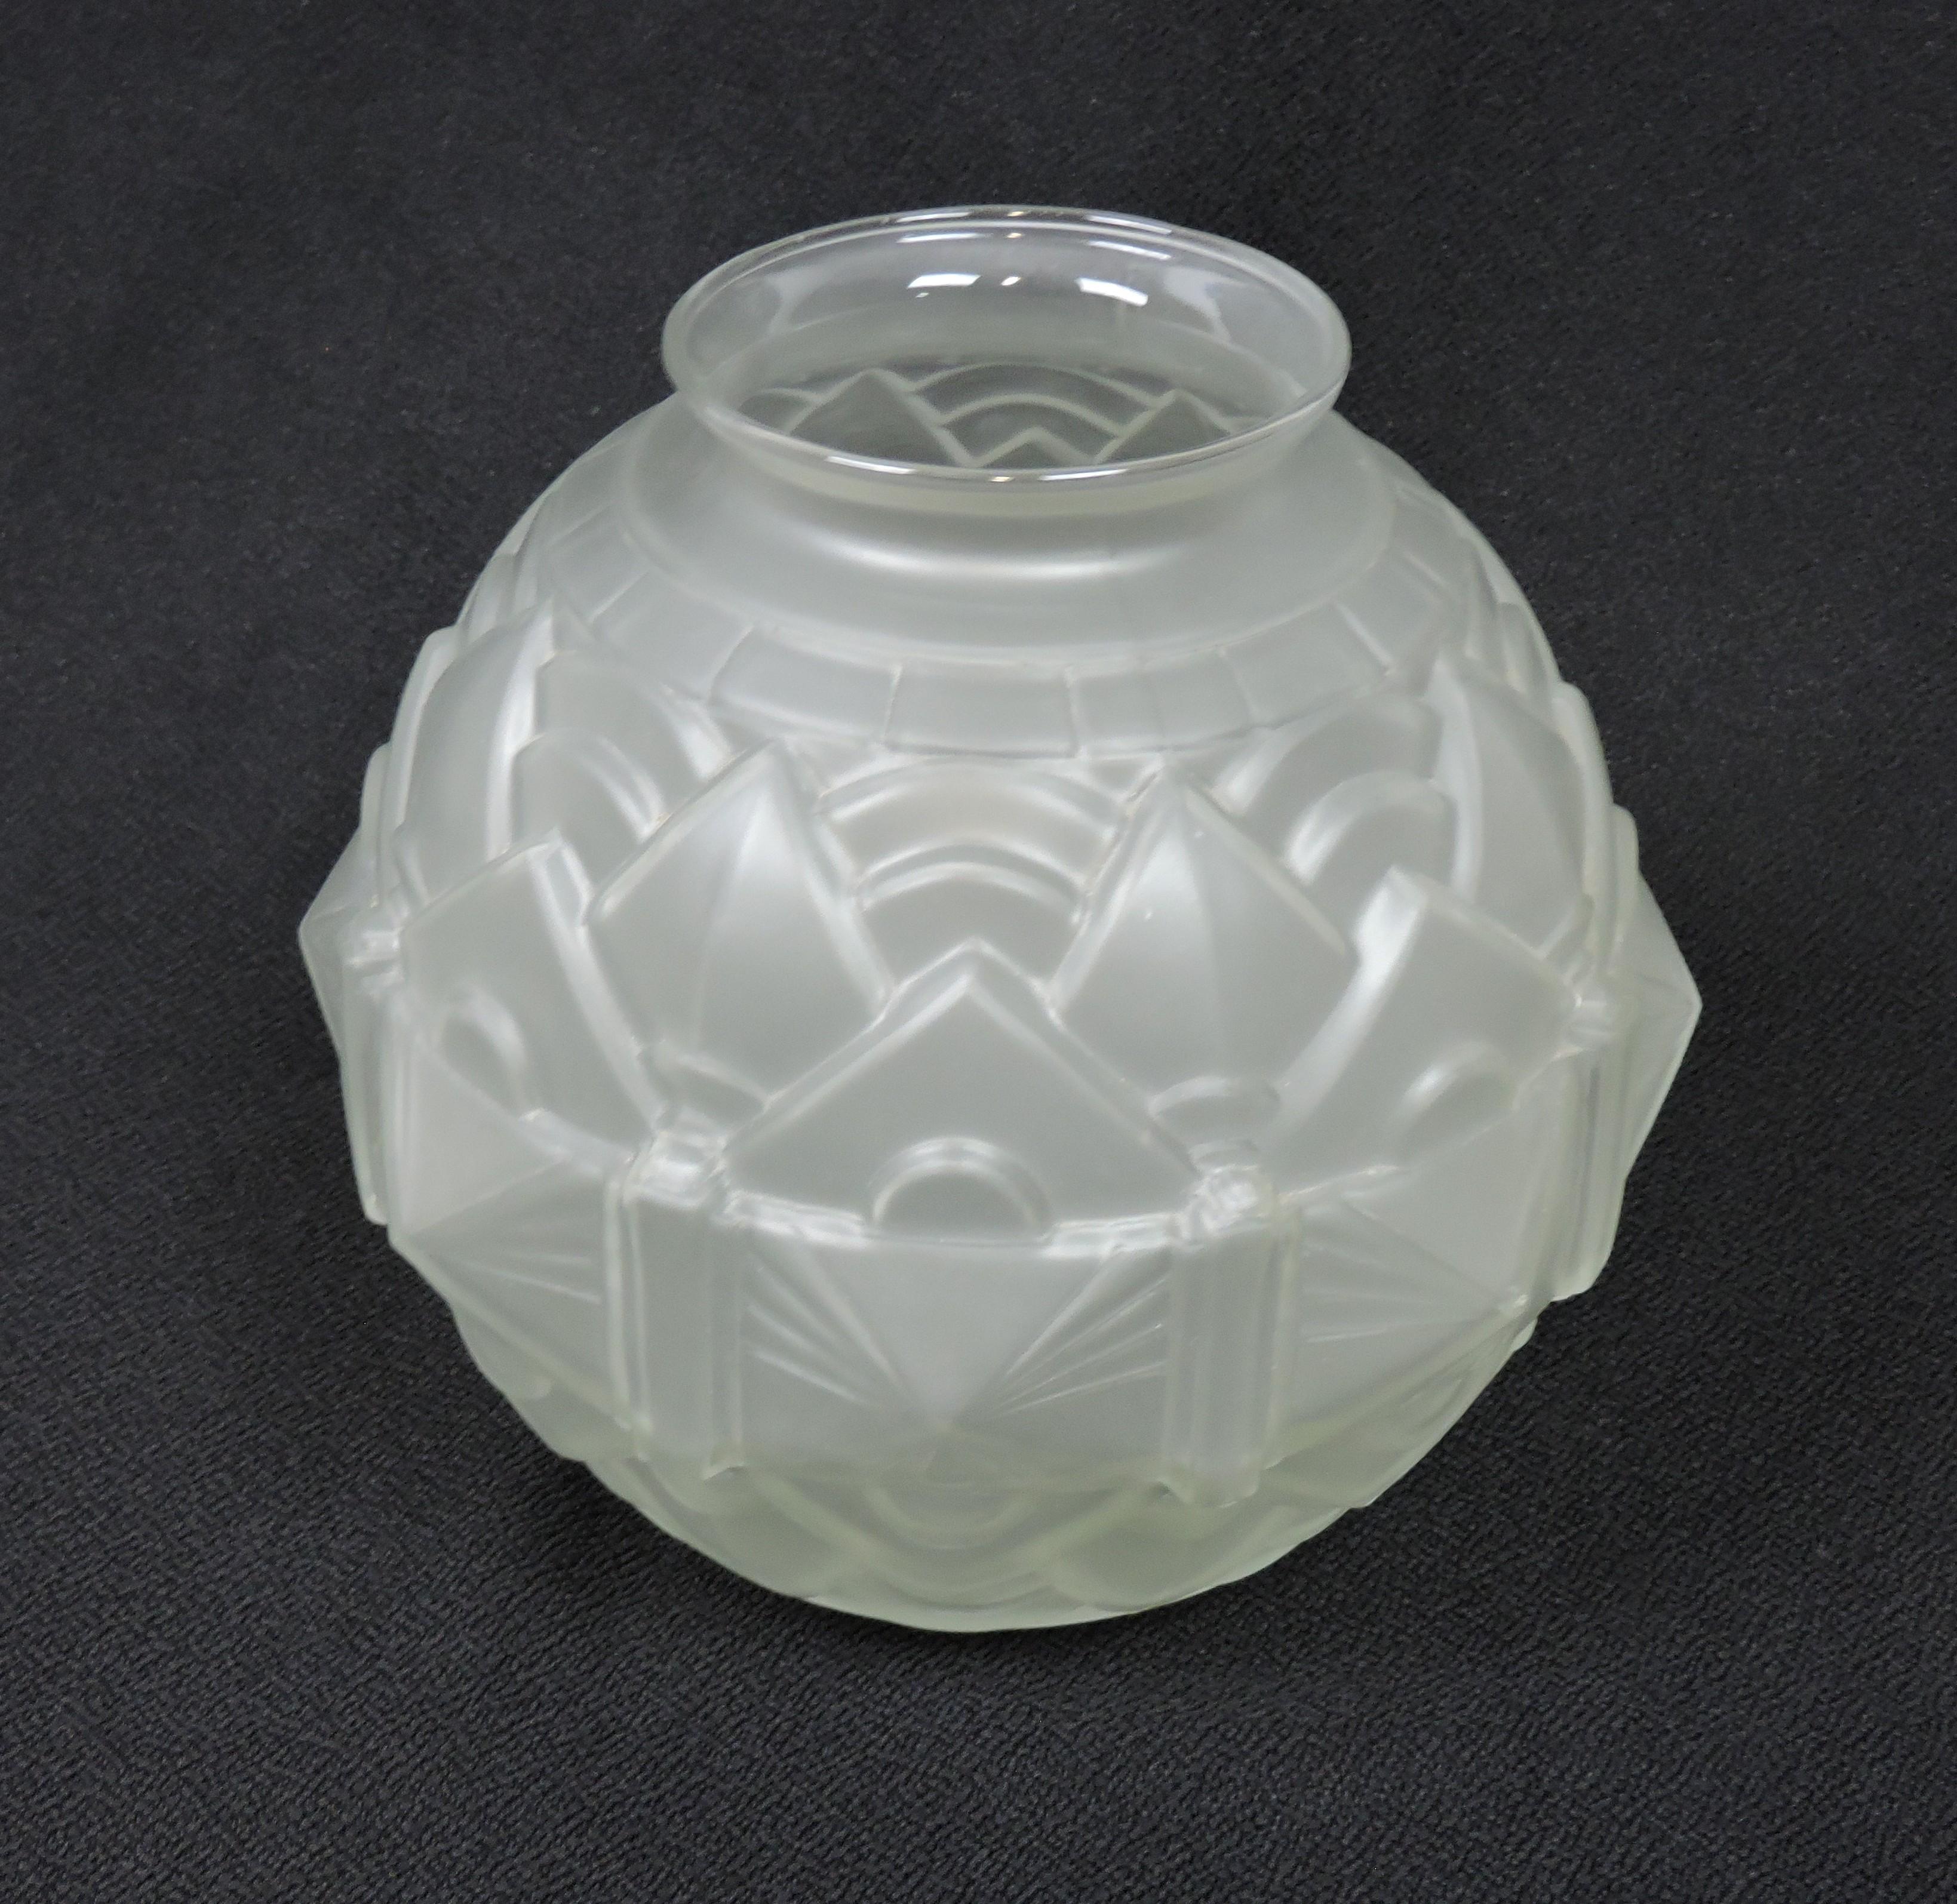 Magnifique vase en verre soufflé Art Déco. Ce vase a une forme de boule avec un magnifique dessin géométrique en relief et une finition lisse, dépolie à l'acide sur verre transparent.